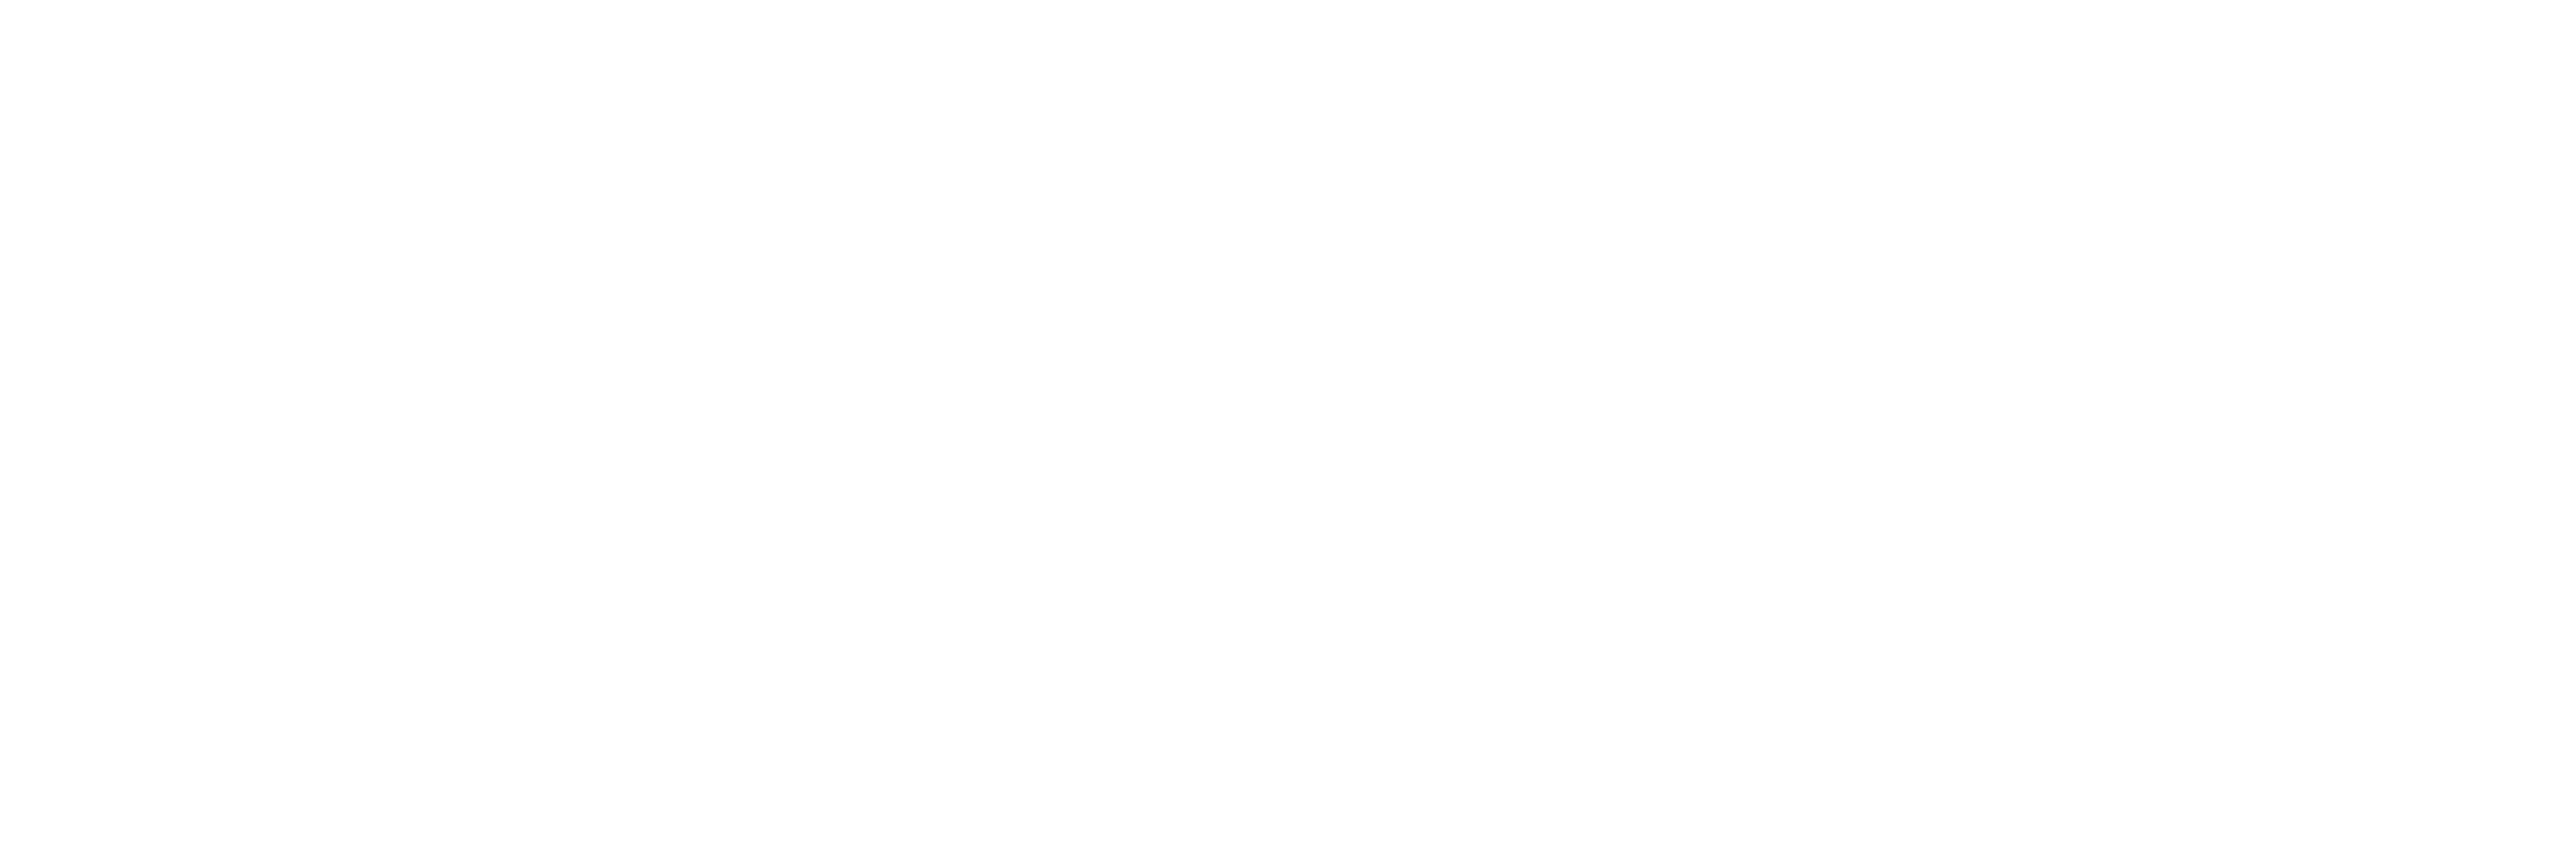 Junior Achievement of Wisconsin, Inc.